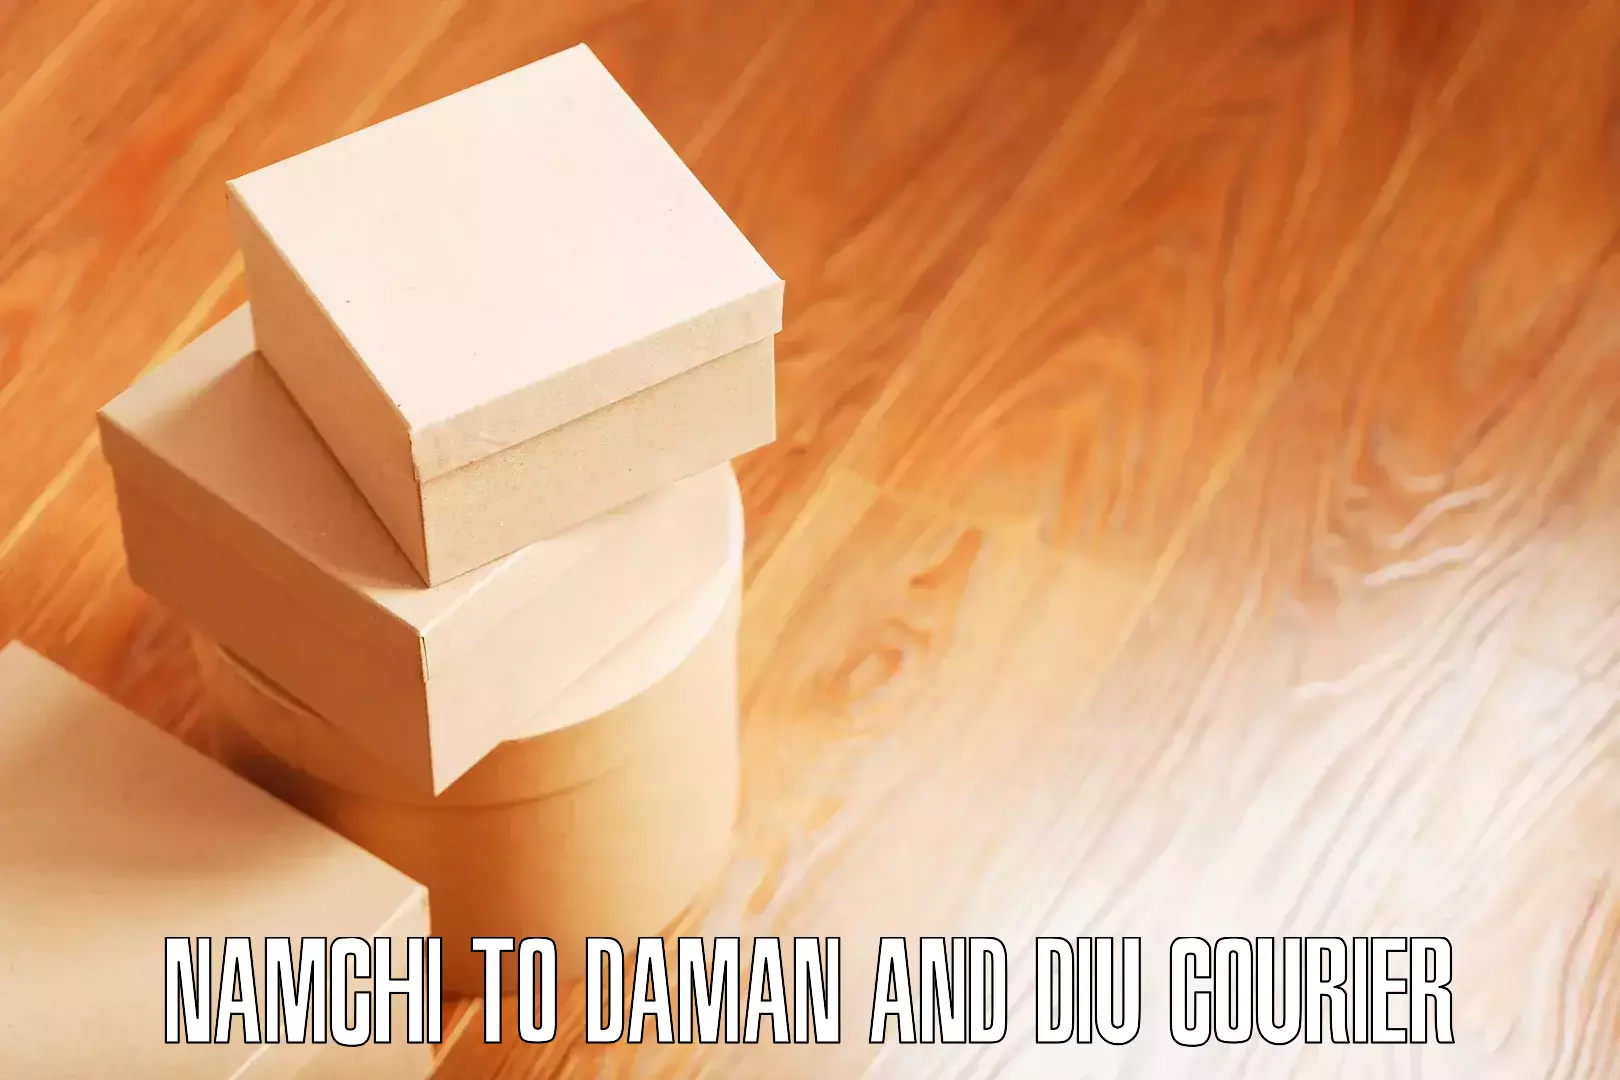 Furniture logistics Namchi to Daman and Diu